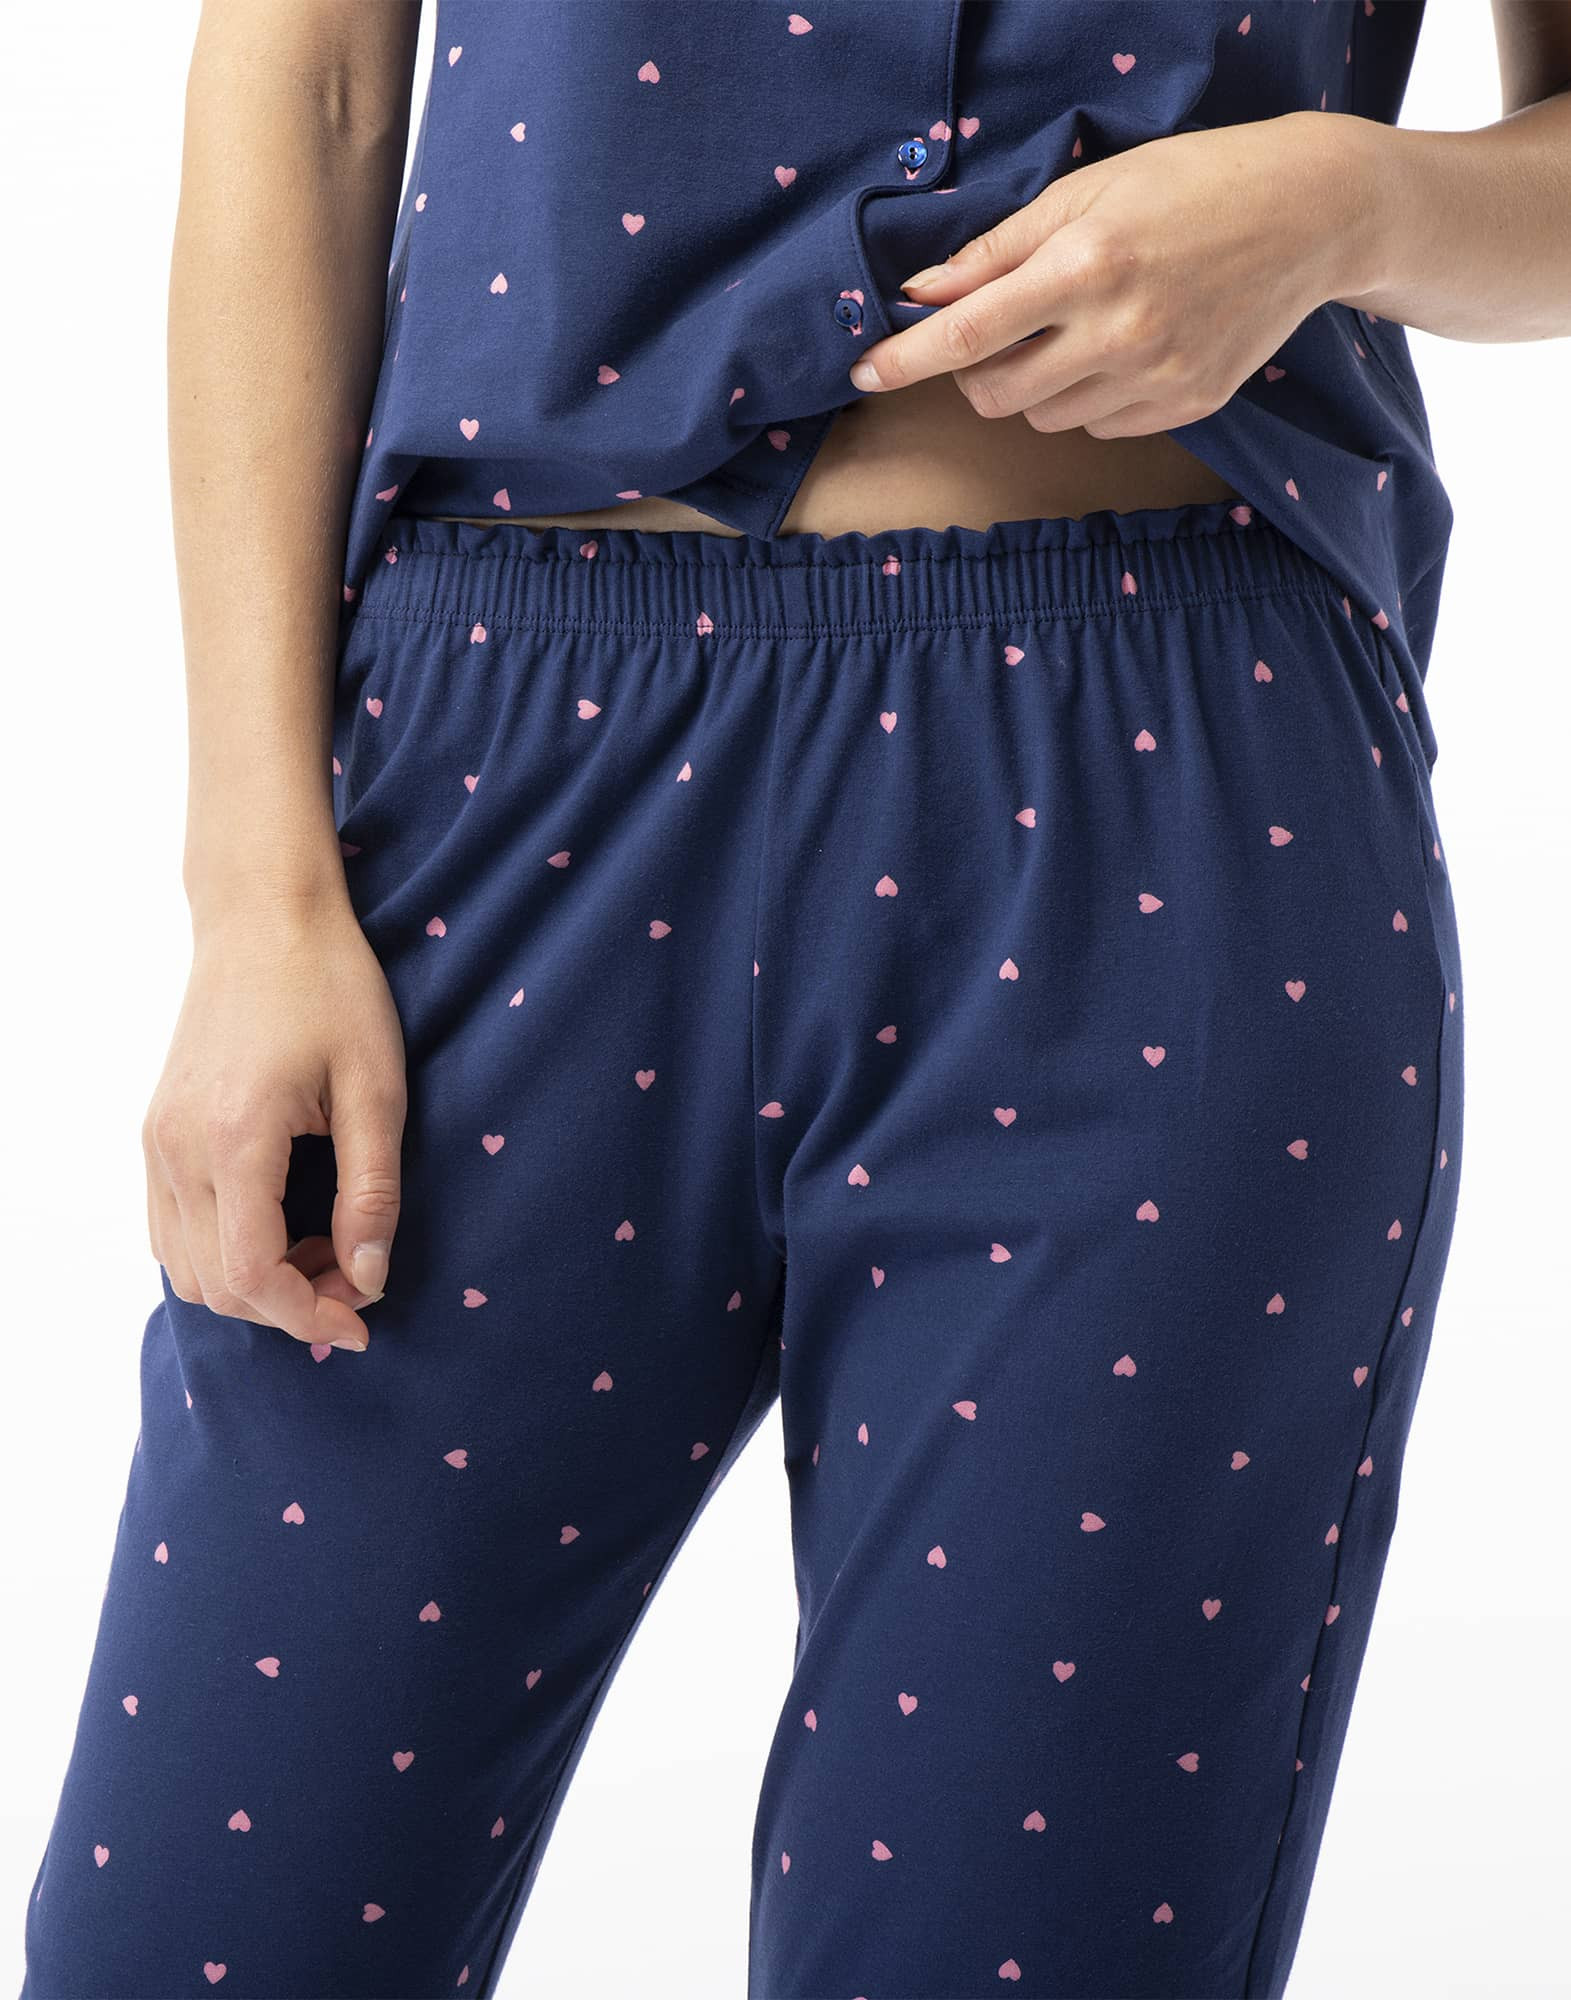 AMORE 706 navy cotton pantacourt pyjamas